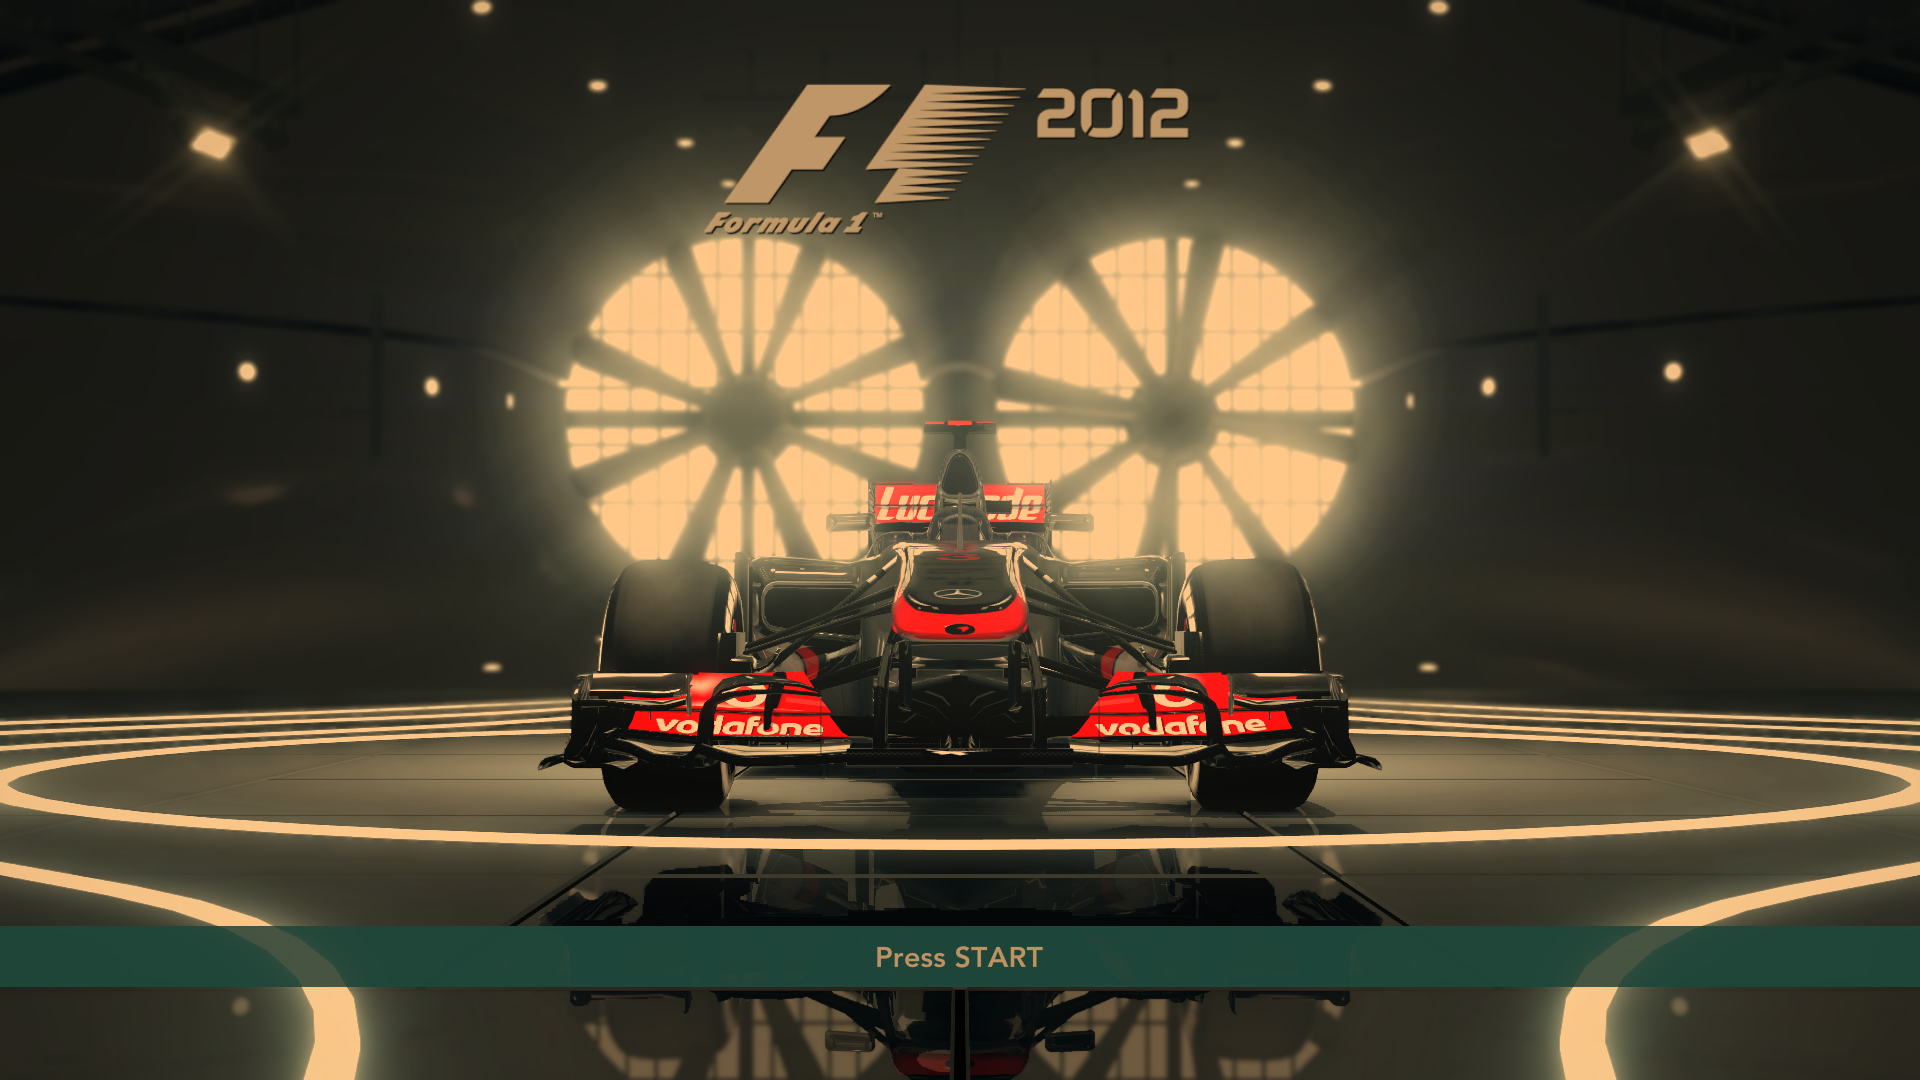 F1 2012 PC - f1_2012 2012-09-18 20-10-32-34.bmp